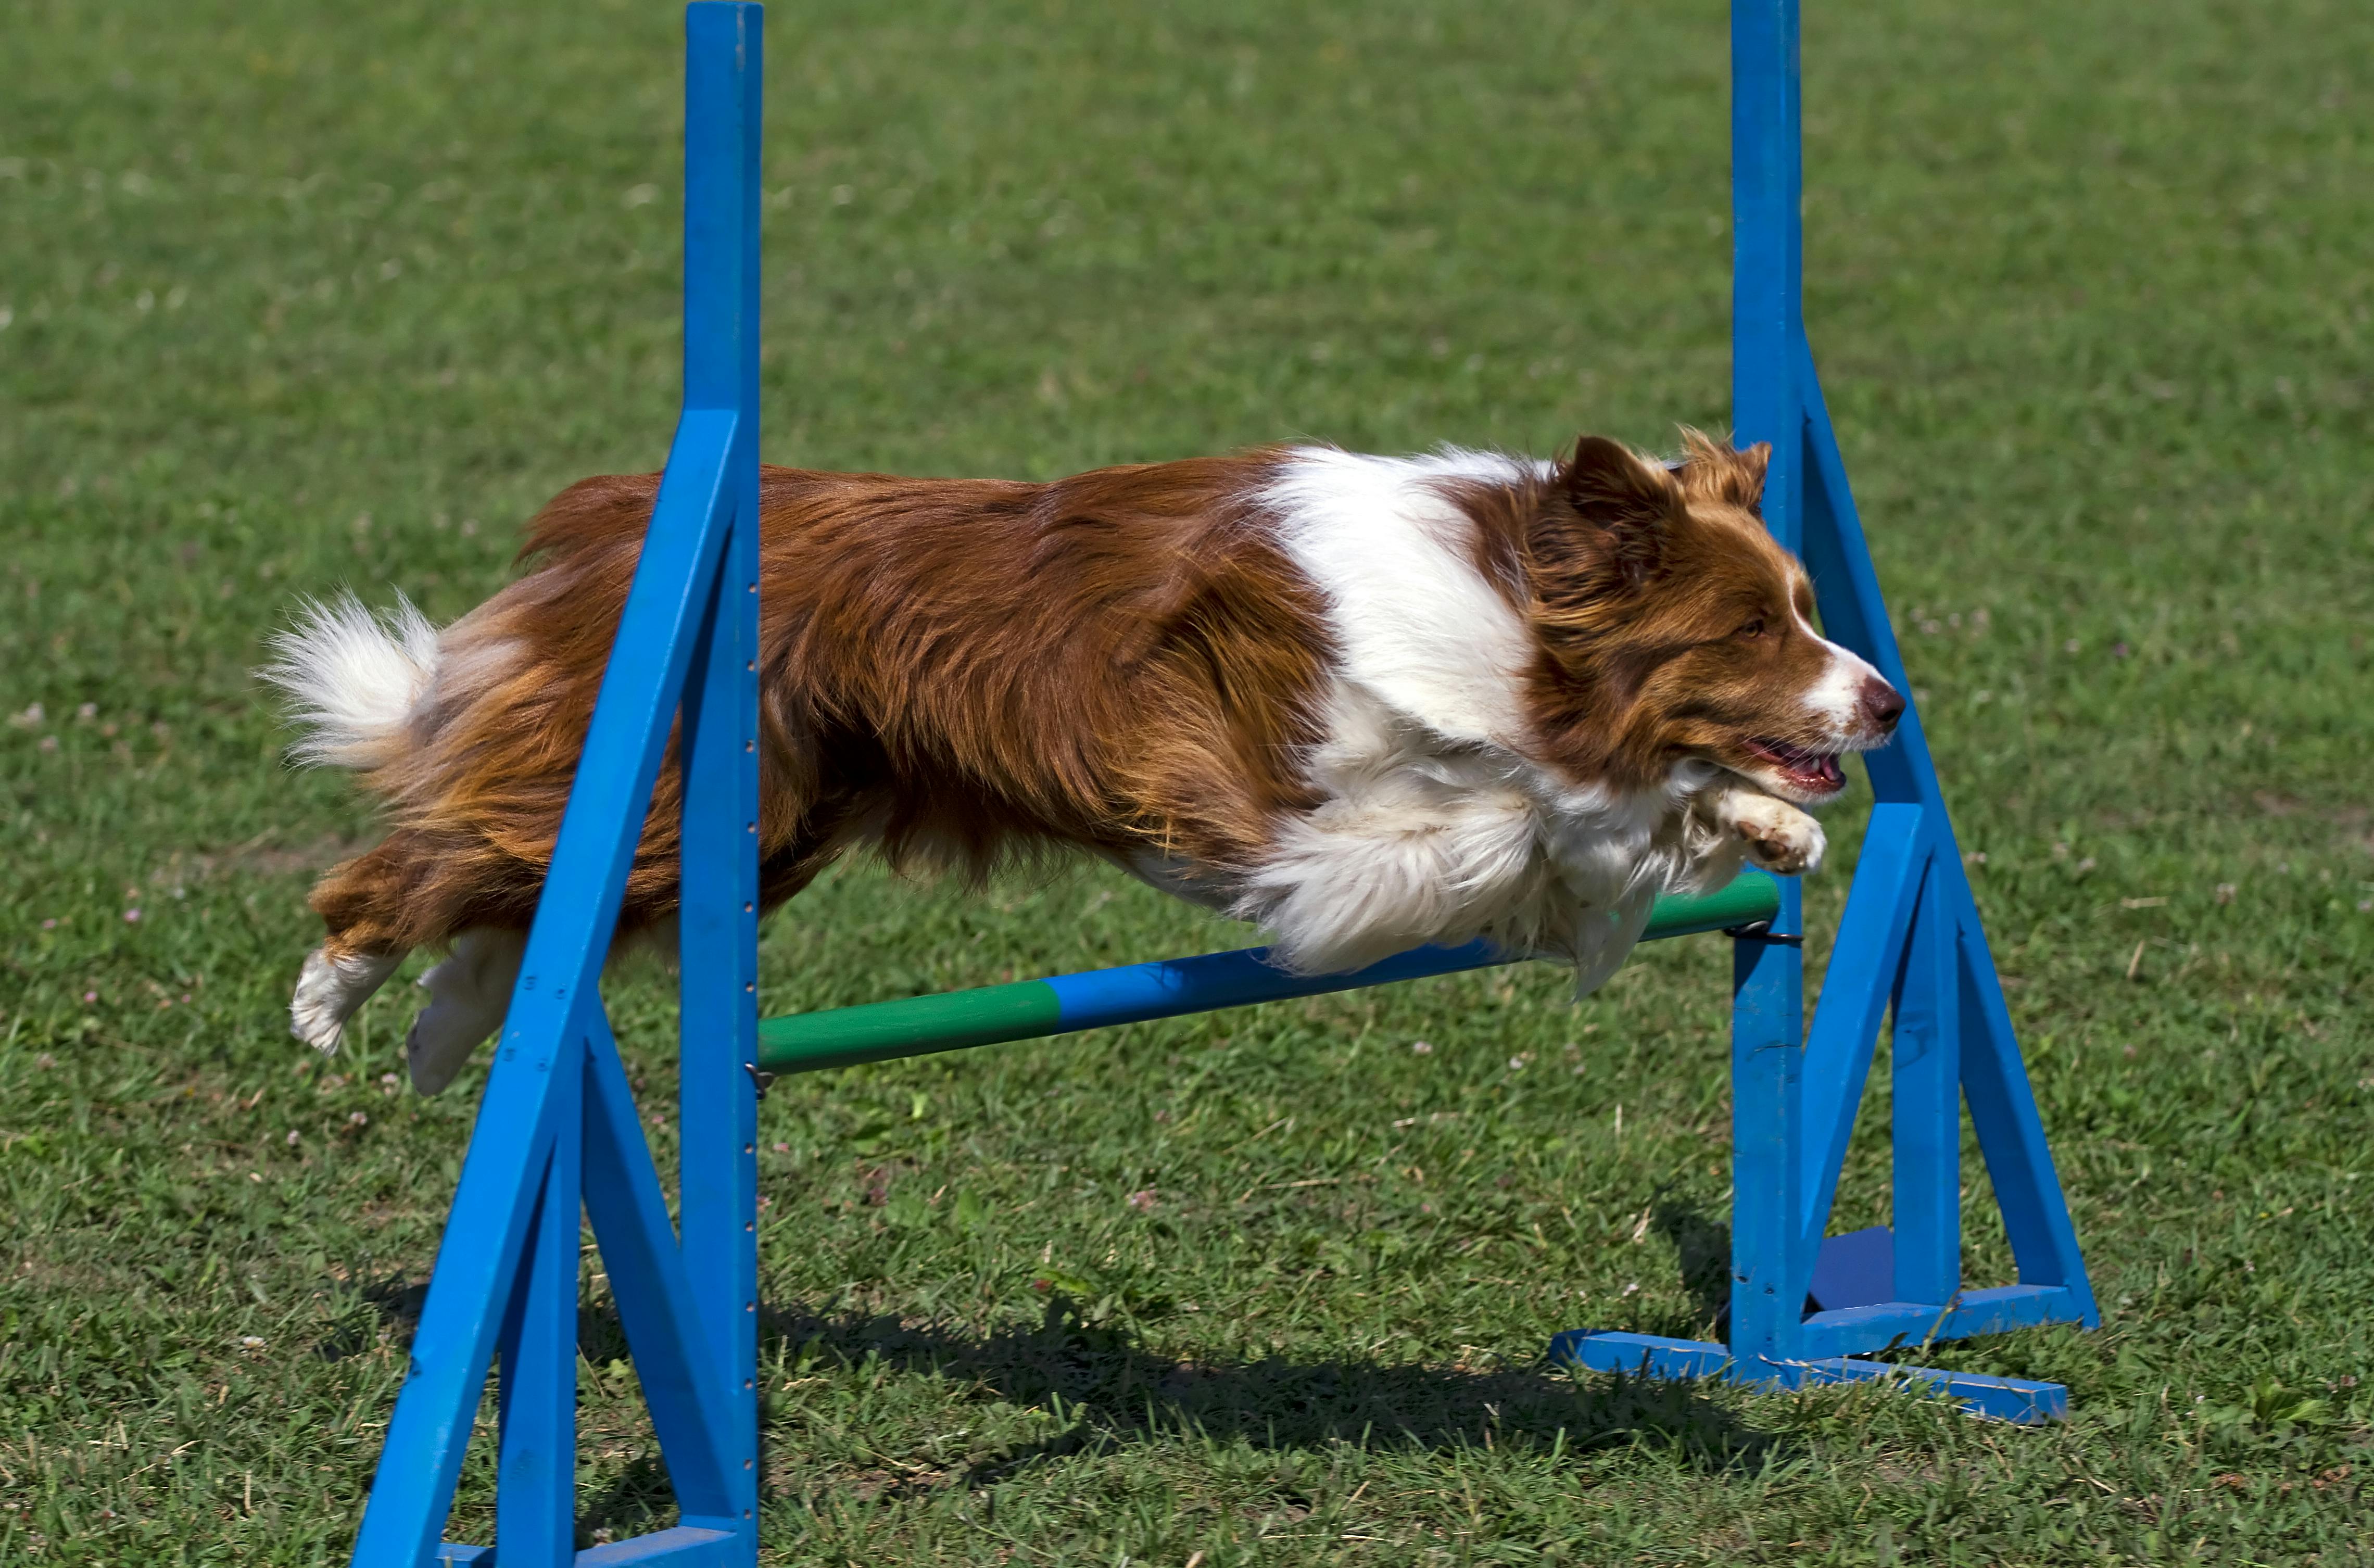 Dog agility course